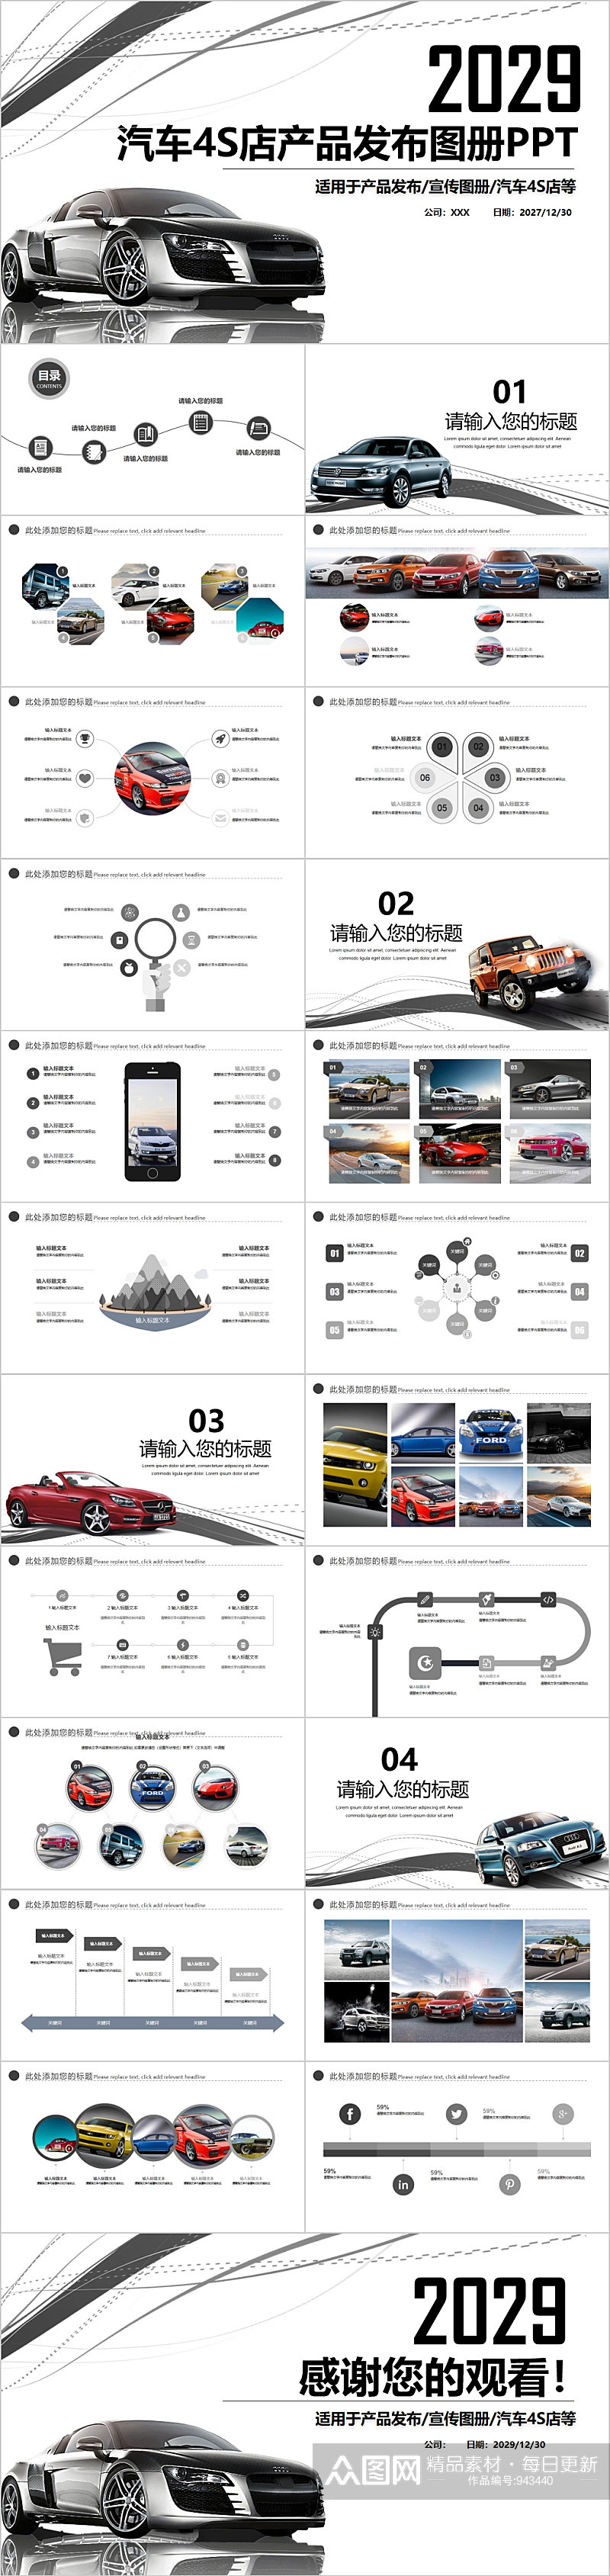 简洁汽车4S店产品发布图册PPT素材